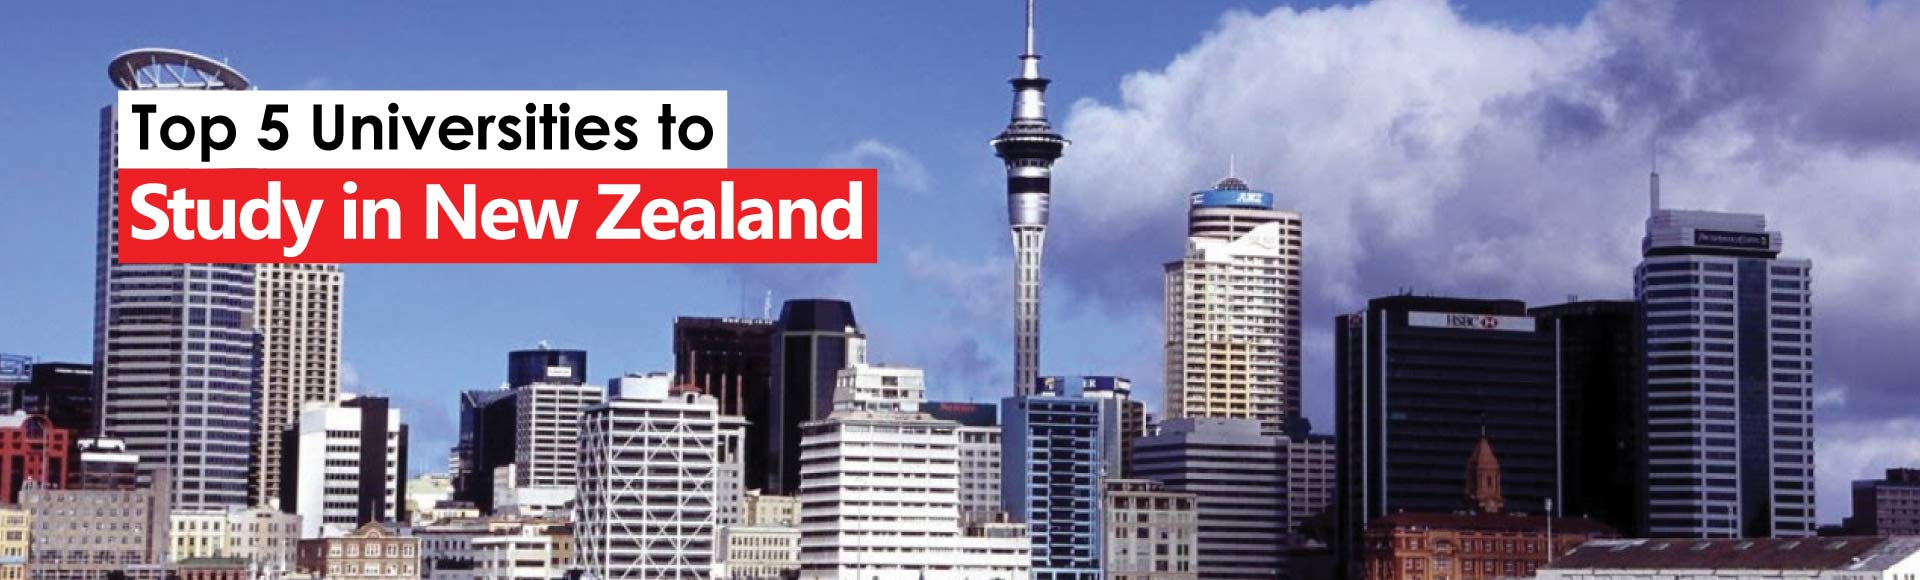 Top 5 Universities to Study in New Zealand